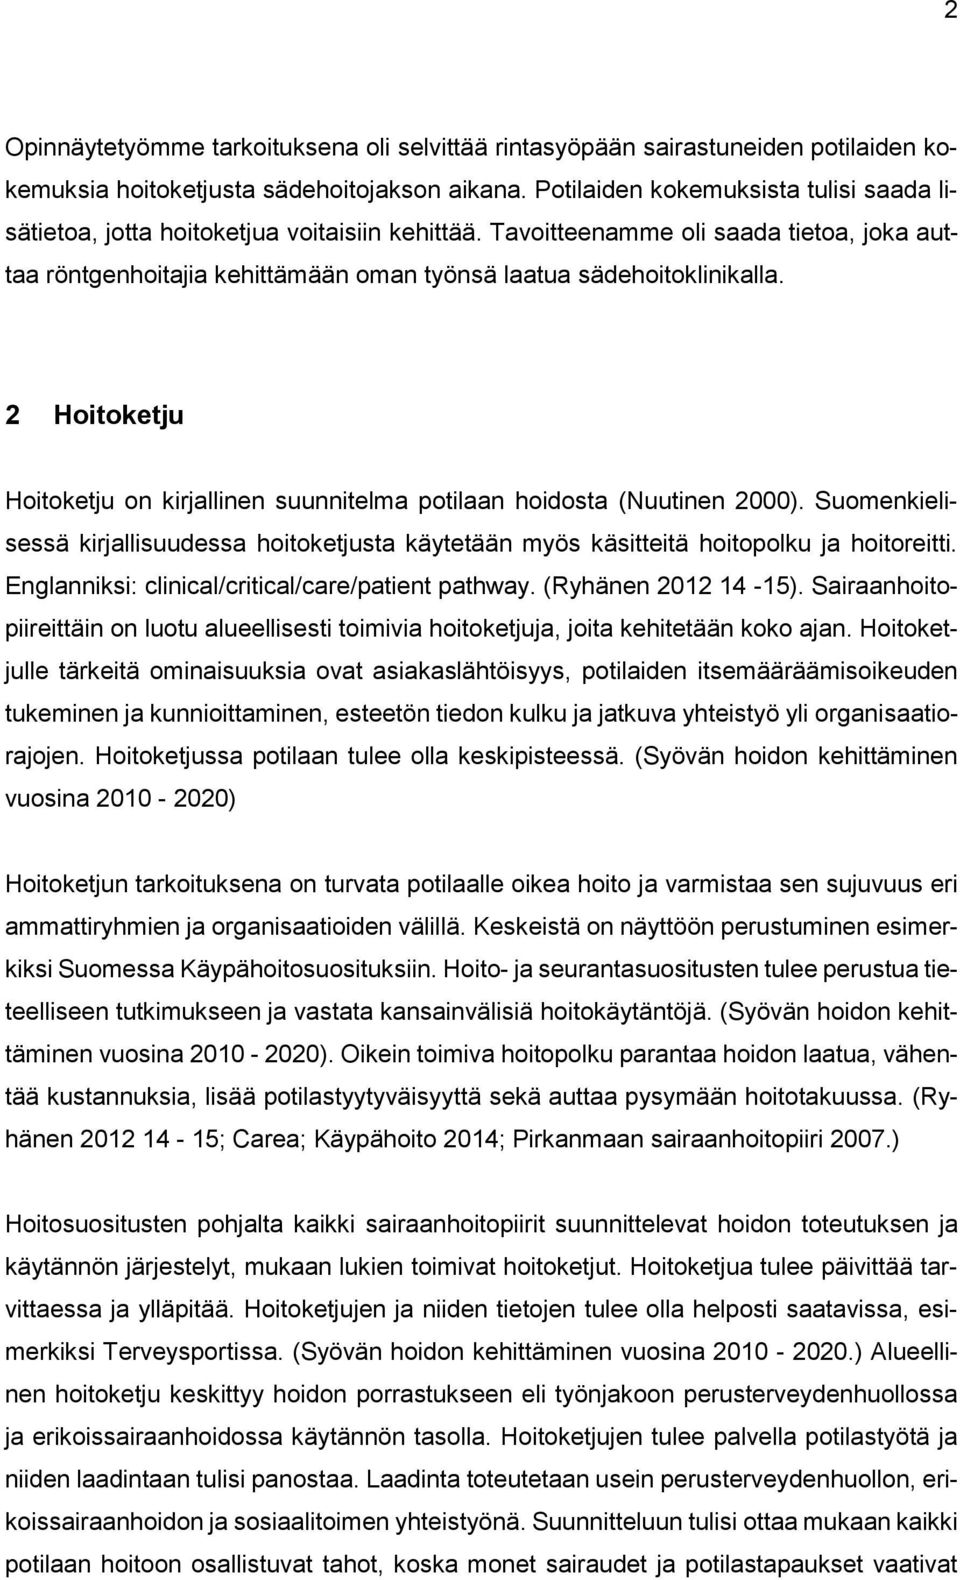 2 Hoitoketju Hoitoketju on kirjallinen suunnitelma potilaan hoidosta (Nuutinen 2000). Suomenkielisessä kirjallisuudessa hoitoketjusta käytetään myös käsitteitä hoitopolku ja hoitoreitti.